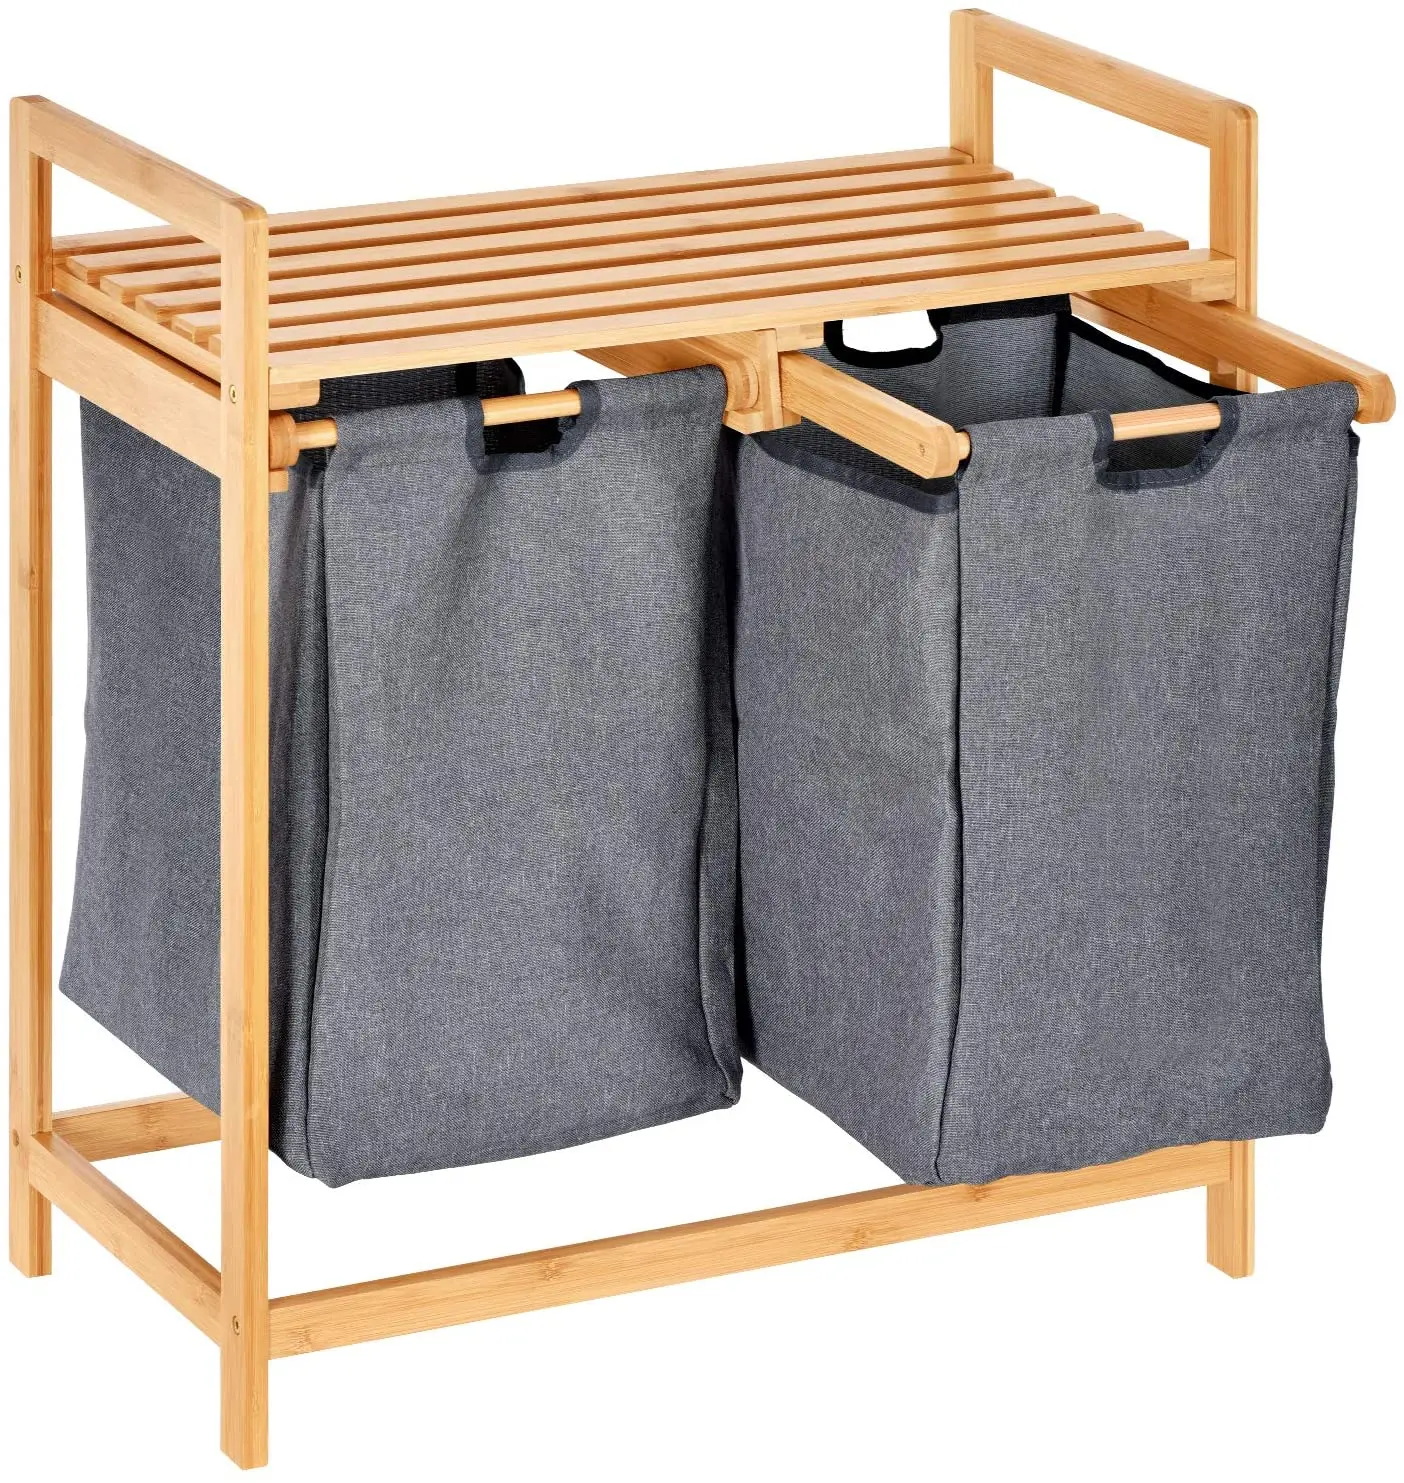 Source Combohome-cesto bambú para la ropa sucia, extraíble con compartimentos duales, cesta de lavandería de dos secciones on m.alibaba.com